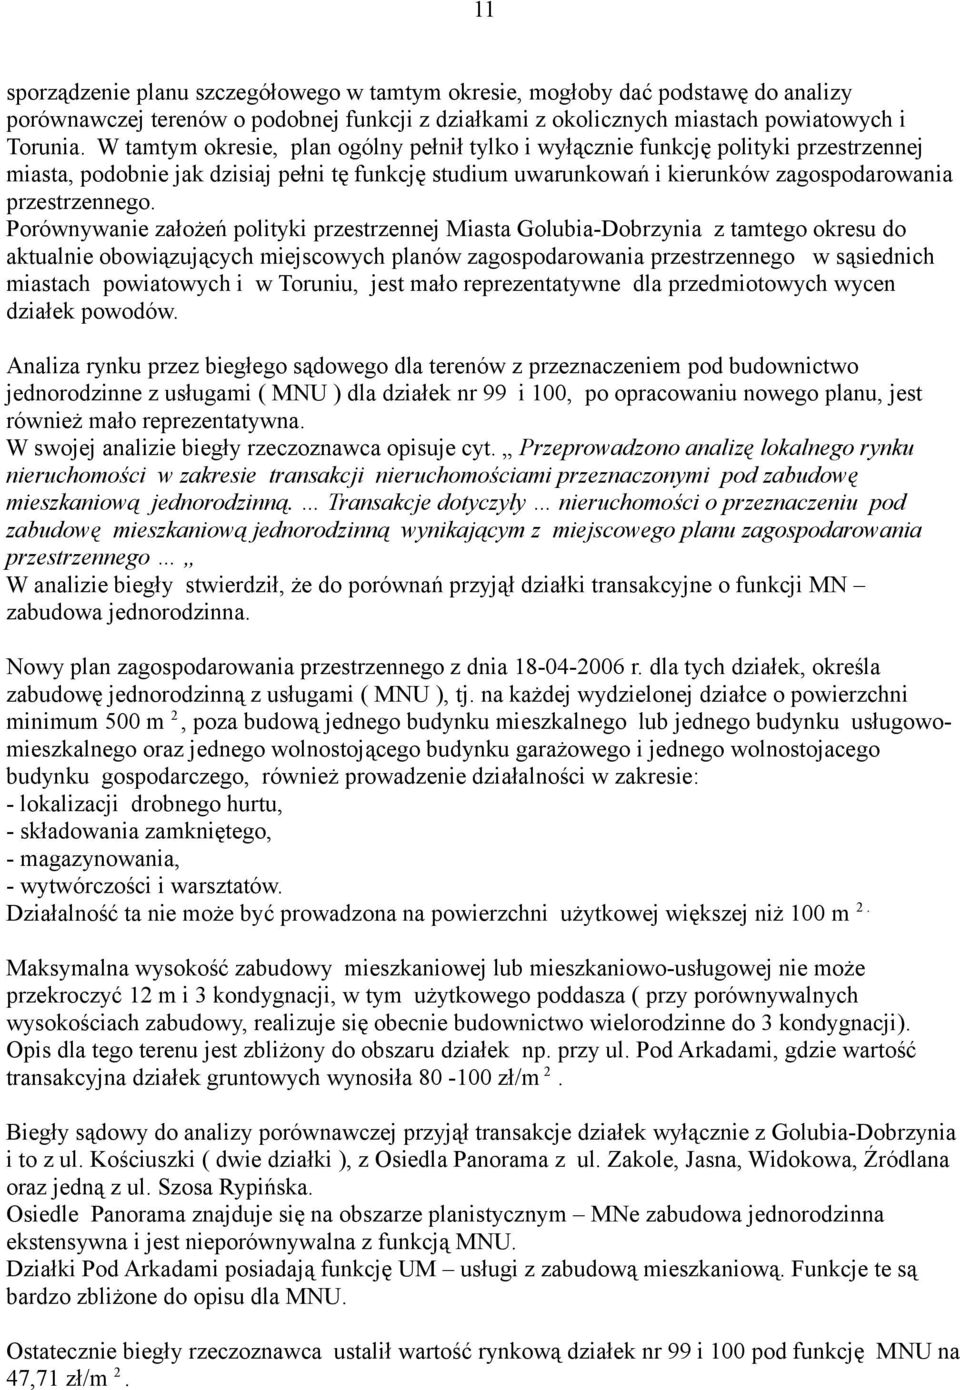 Porównywanie założeń polityki przestrzennej Miasta Golubia-Dobrzynia z tamtego okresu do aktualnie obowiązujących miejscowych planów zagospodarowania przestrzennego w sąsiednich miastach powiatowych